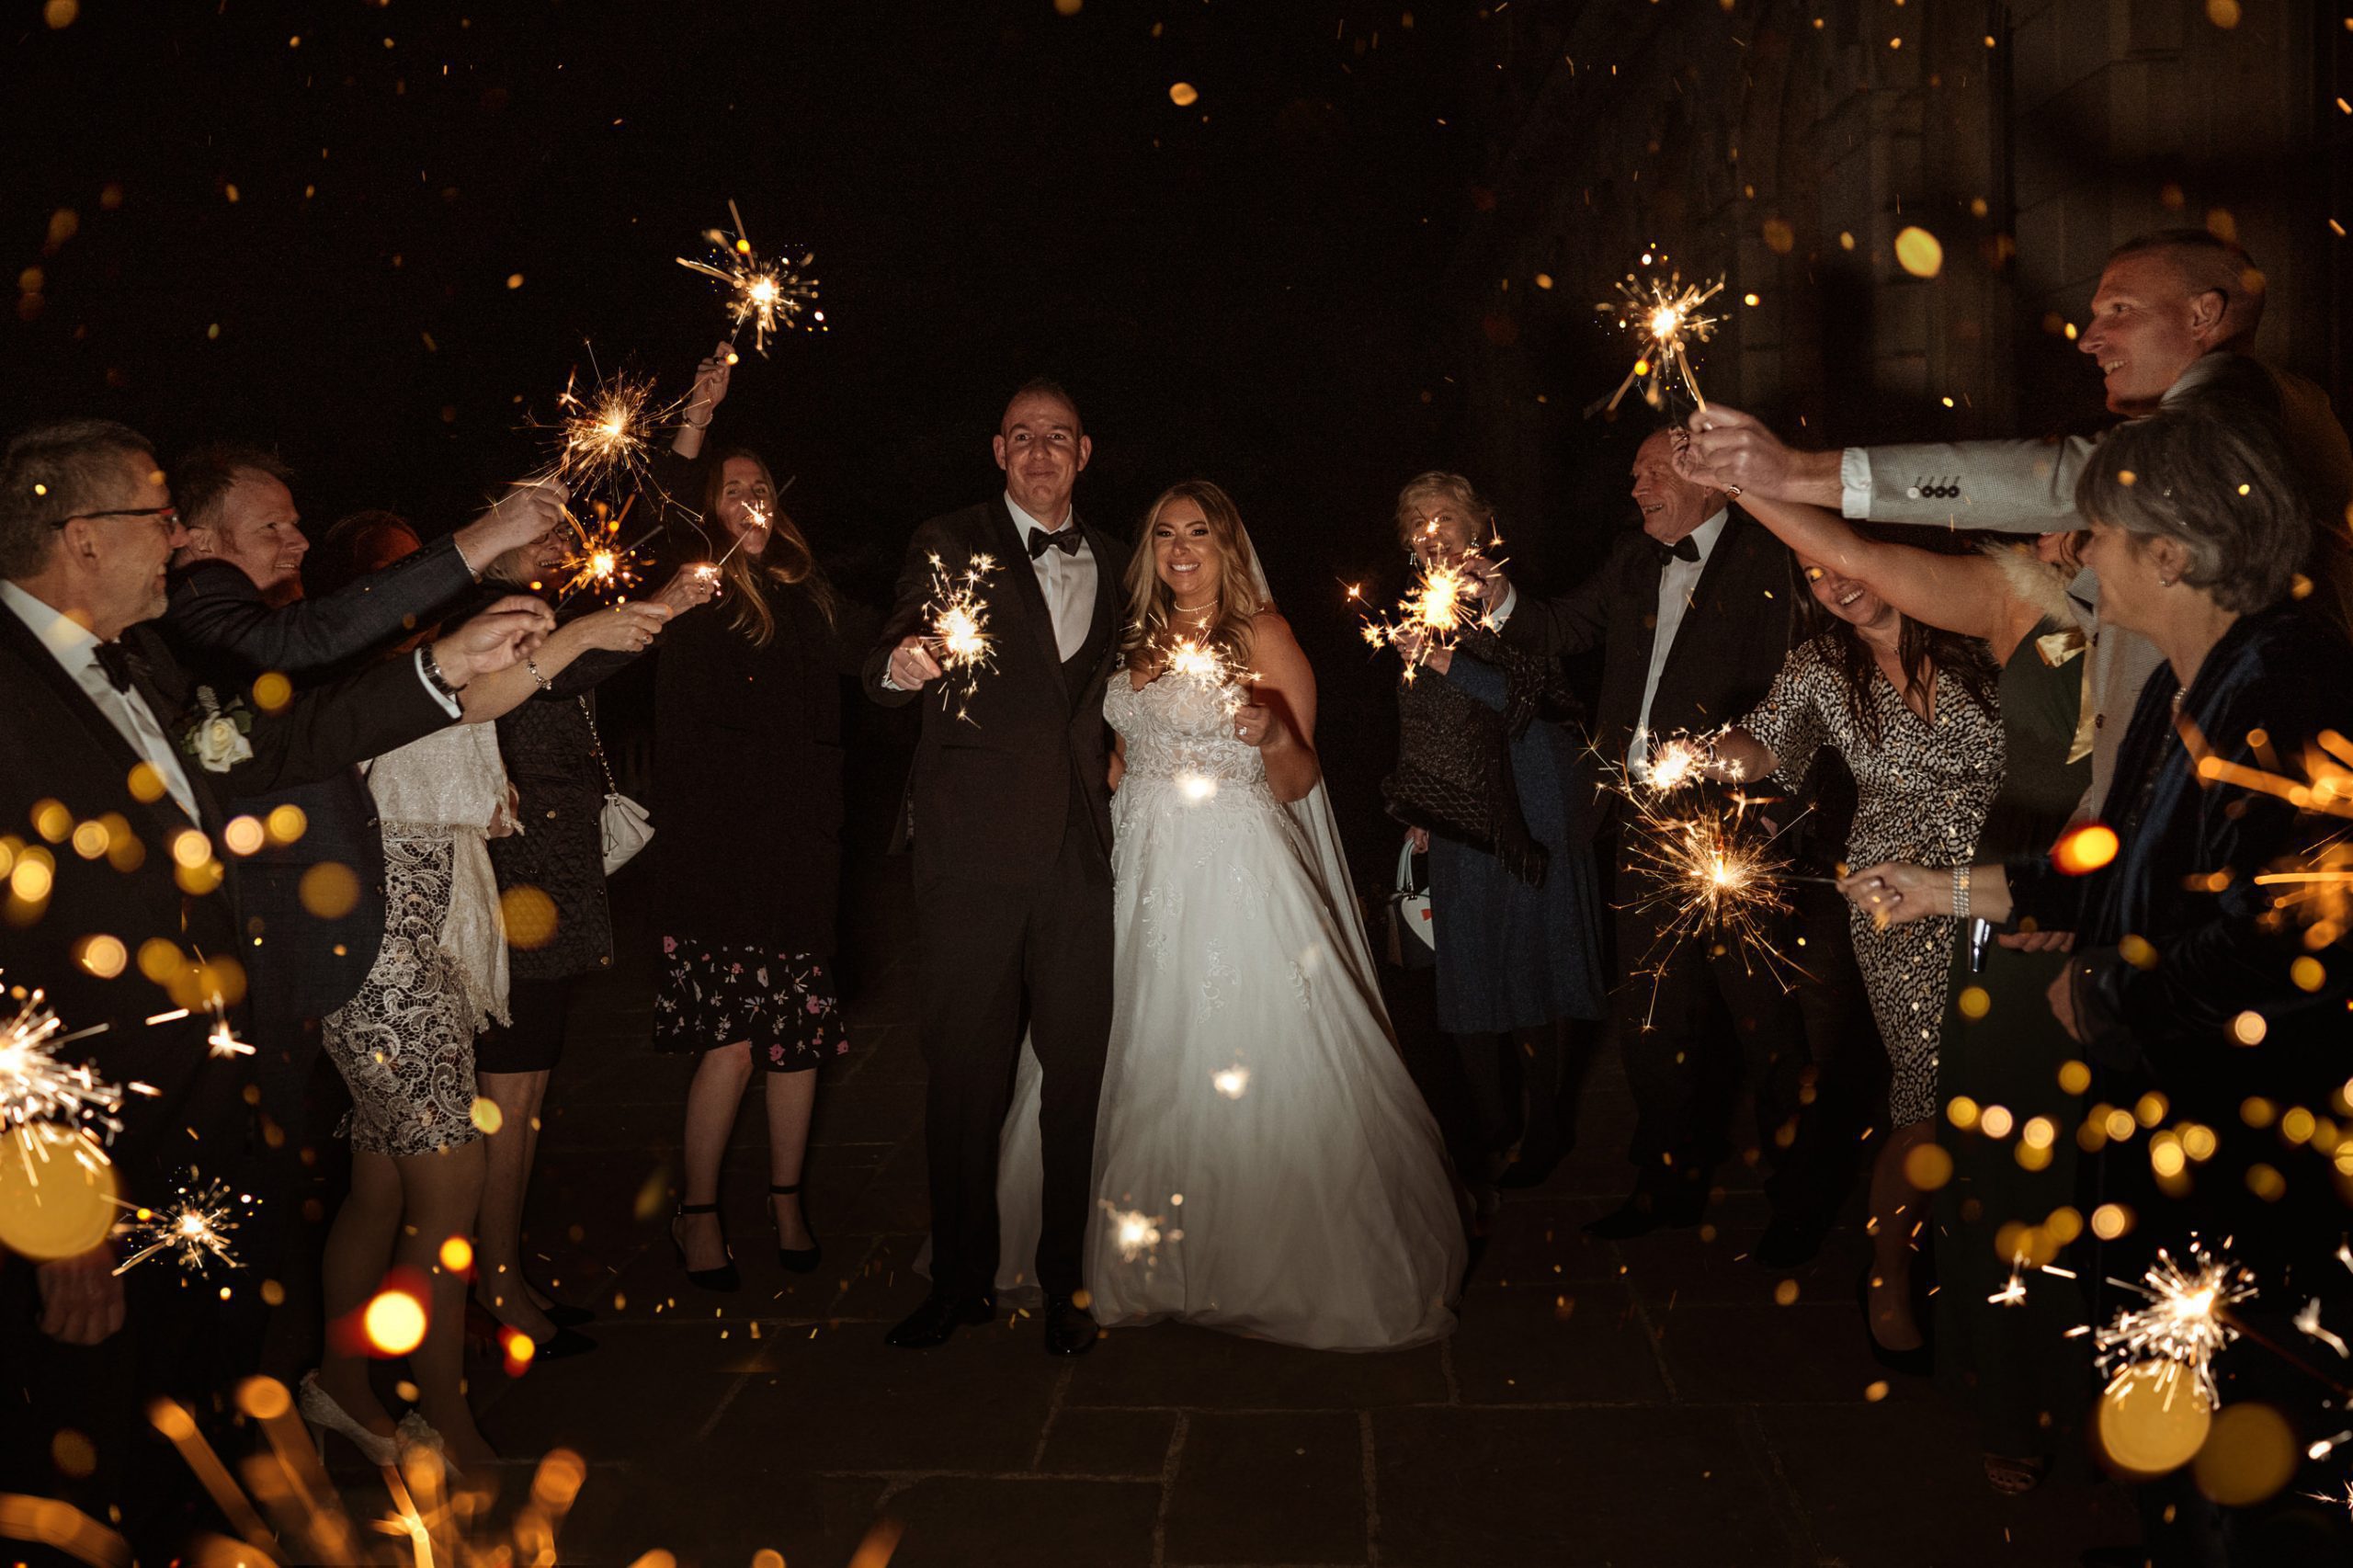 sparkler exit at Cliveden House wedding